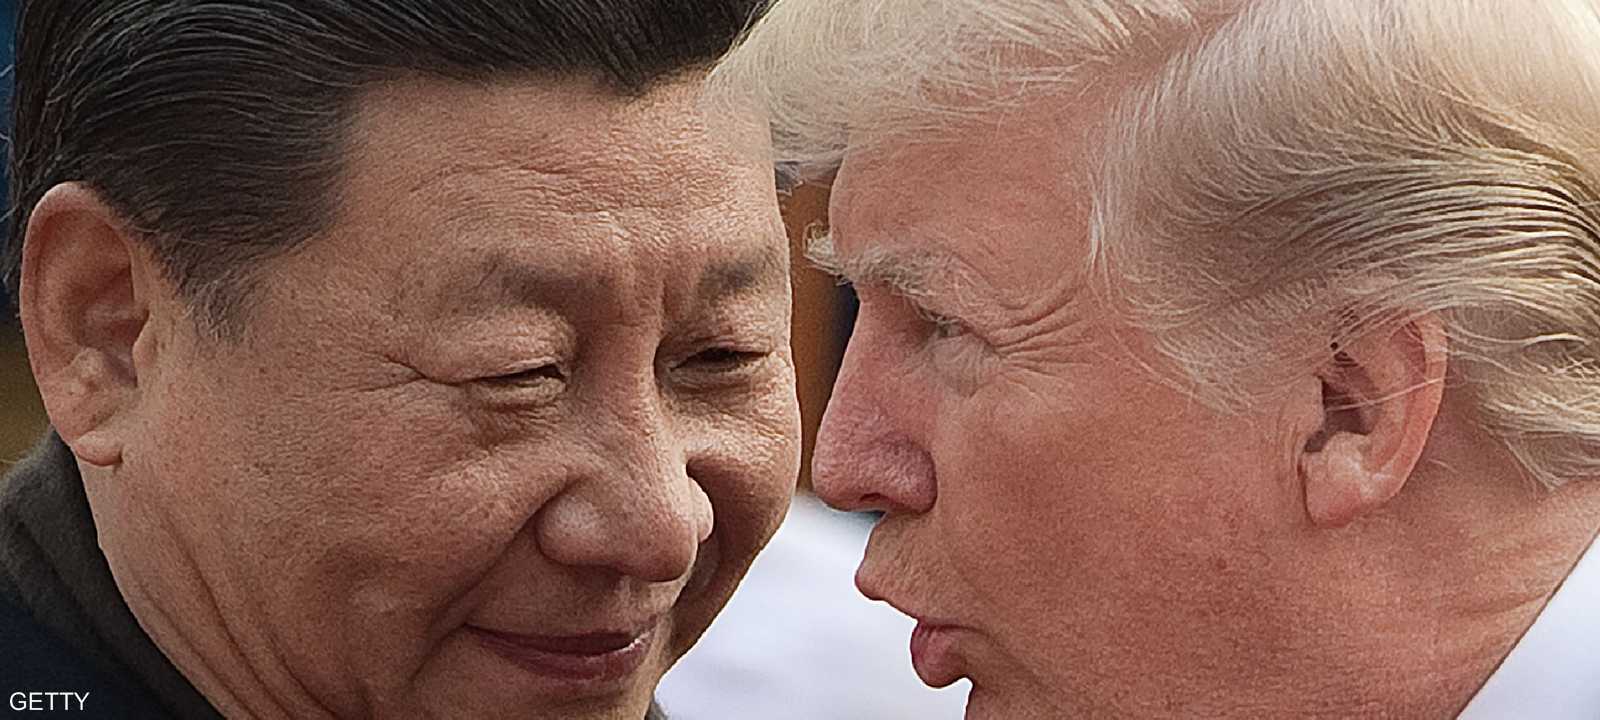 ترامب غير راض عن العروض الصينية لإنهاء الحرب التجارية